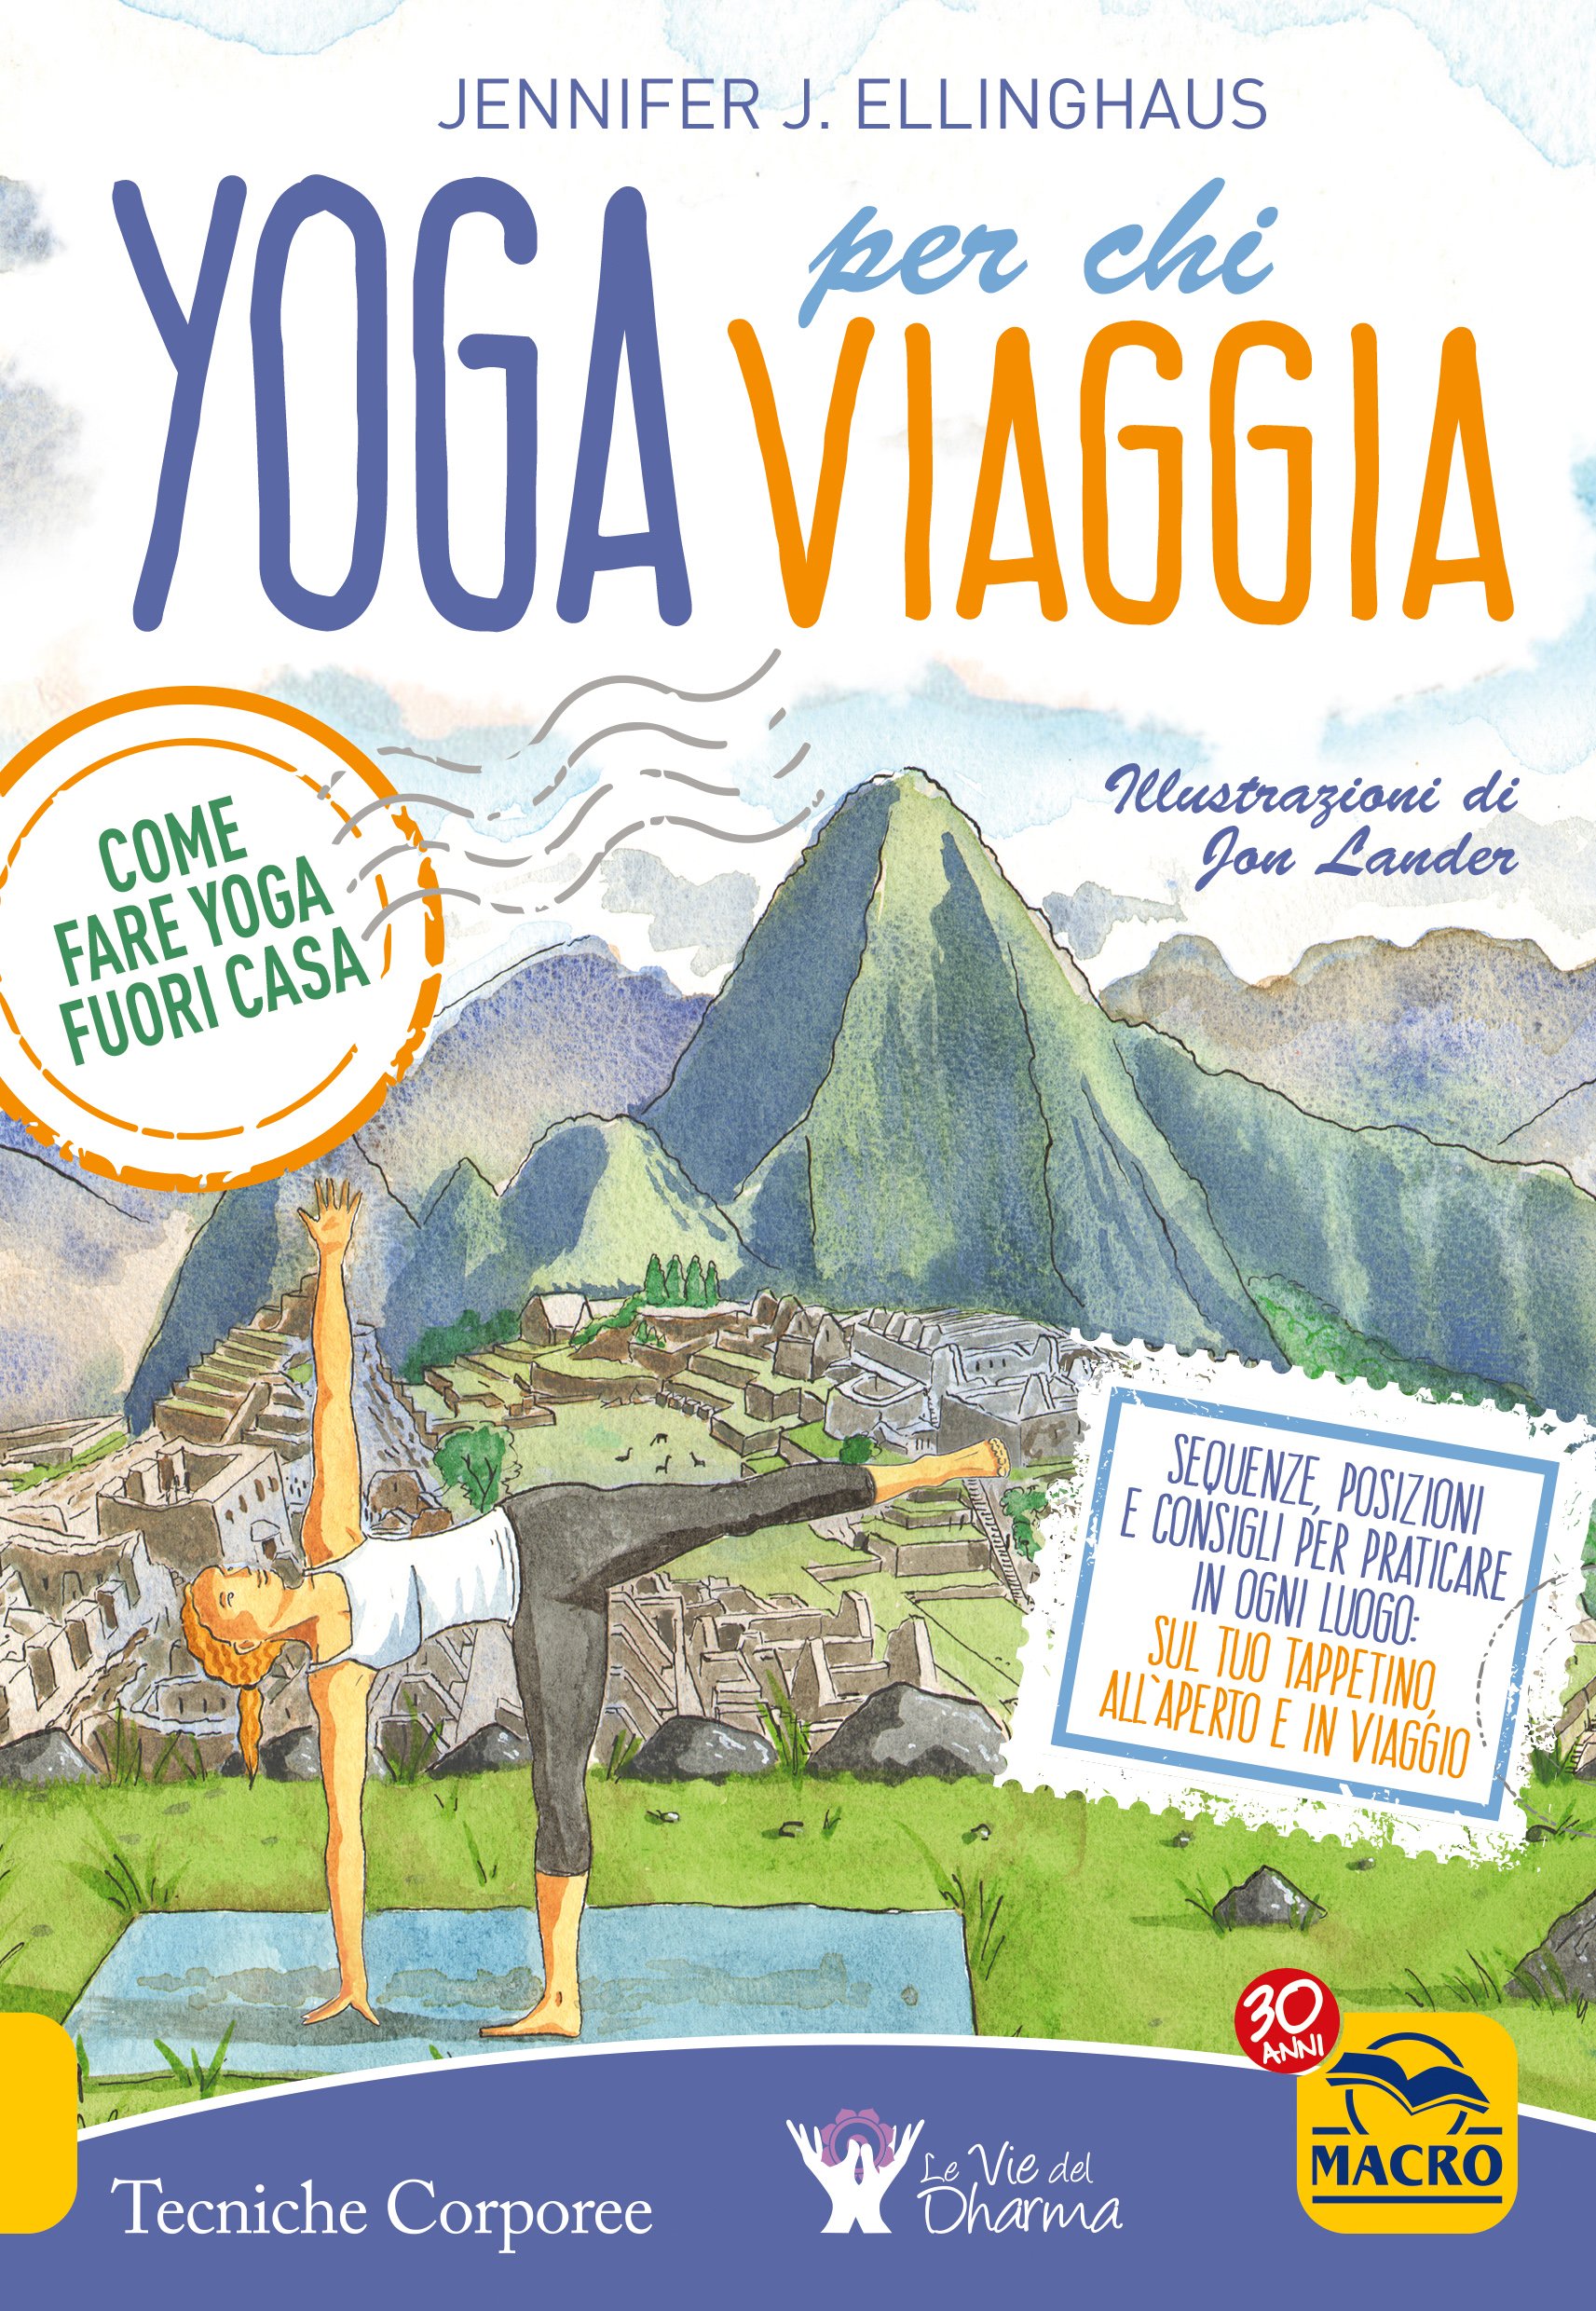 Yoga Per Chi Viaggia Ebook Pdf